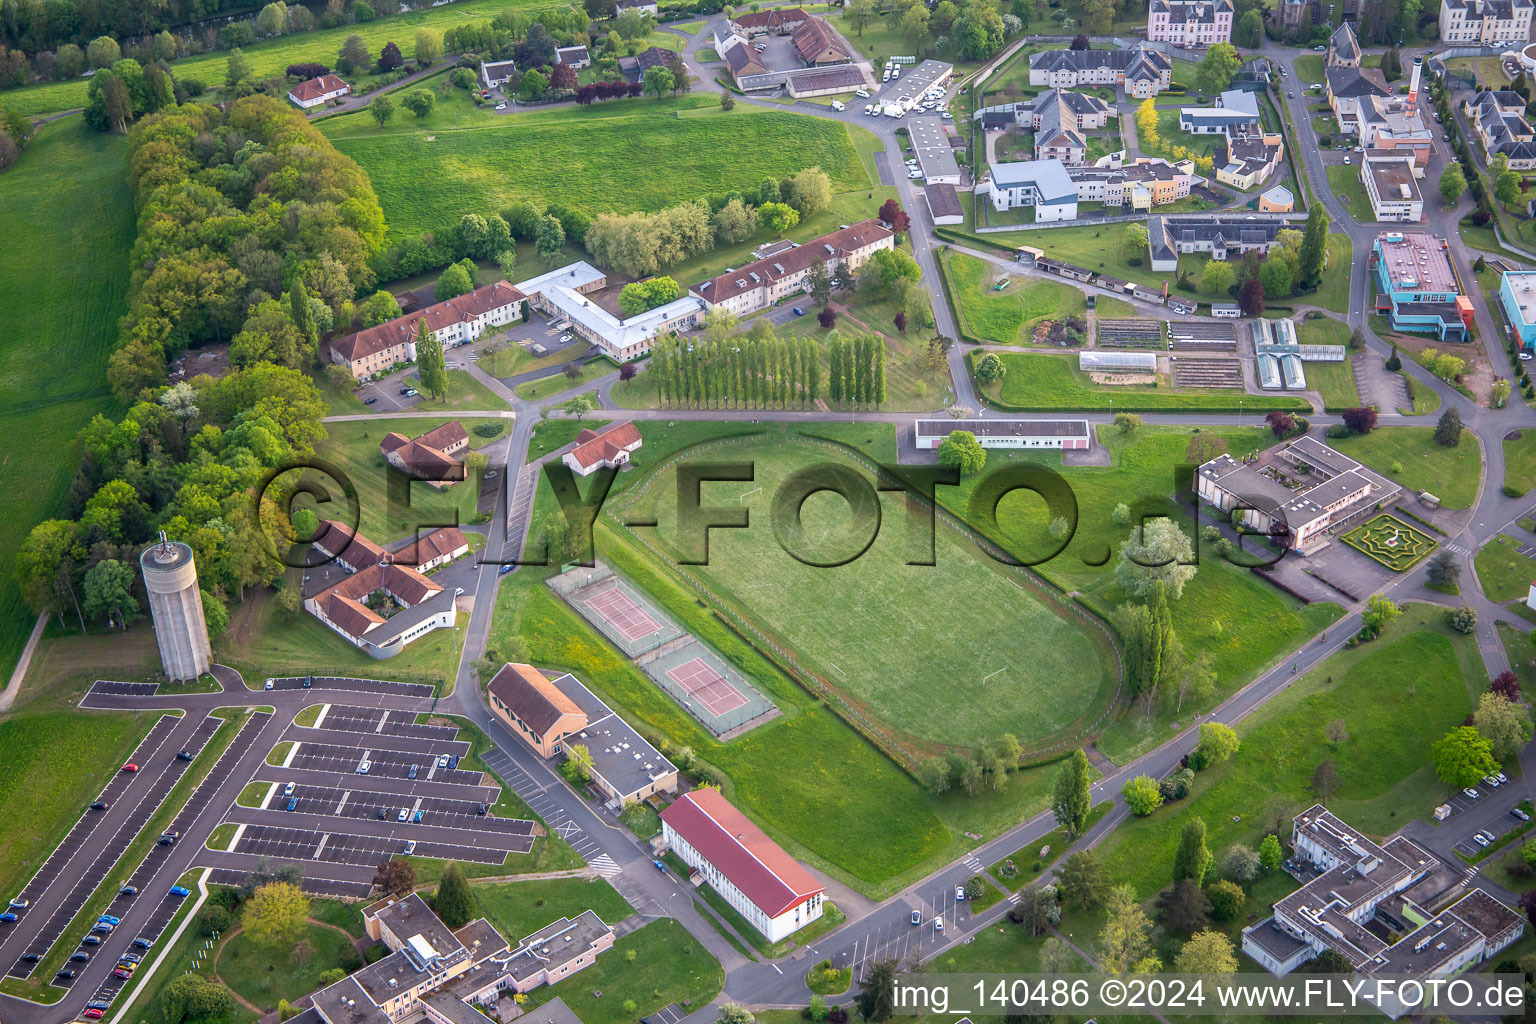 Vue aérienne de Quartier Blauberg in Saargemünd dans le département Moselle, France